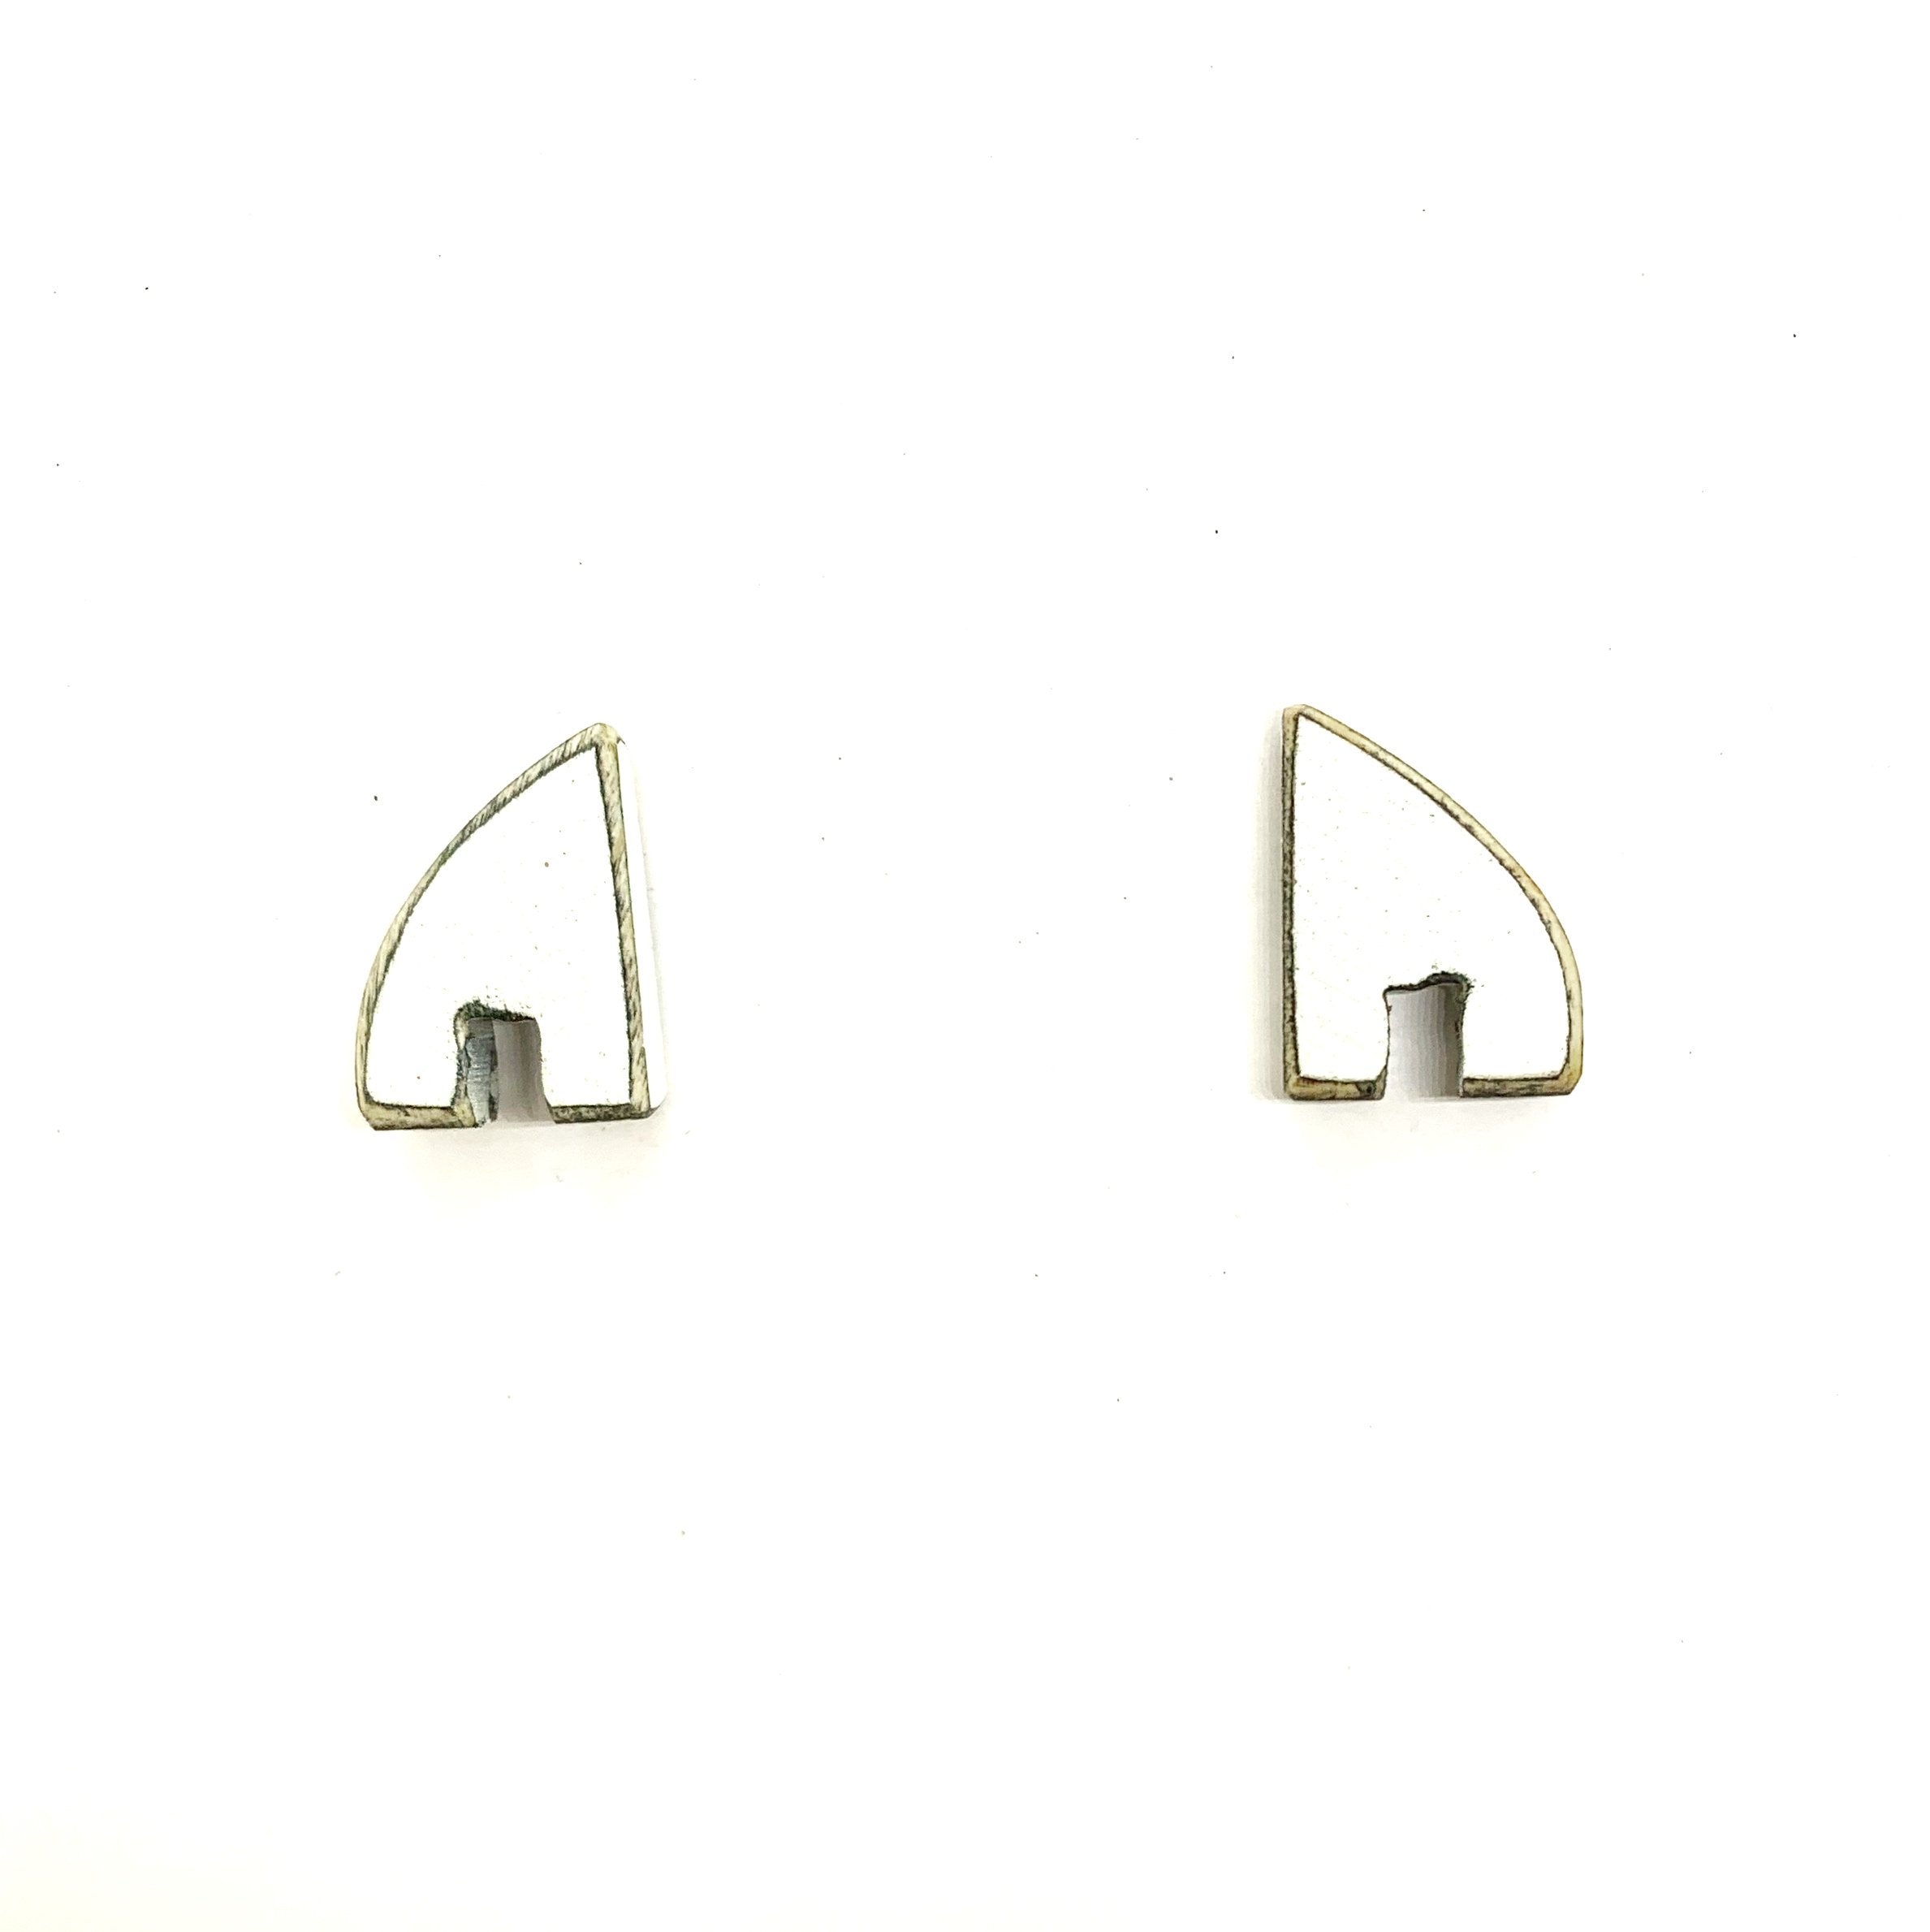 Grade A earrings